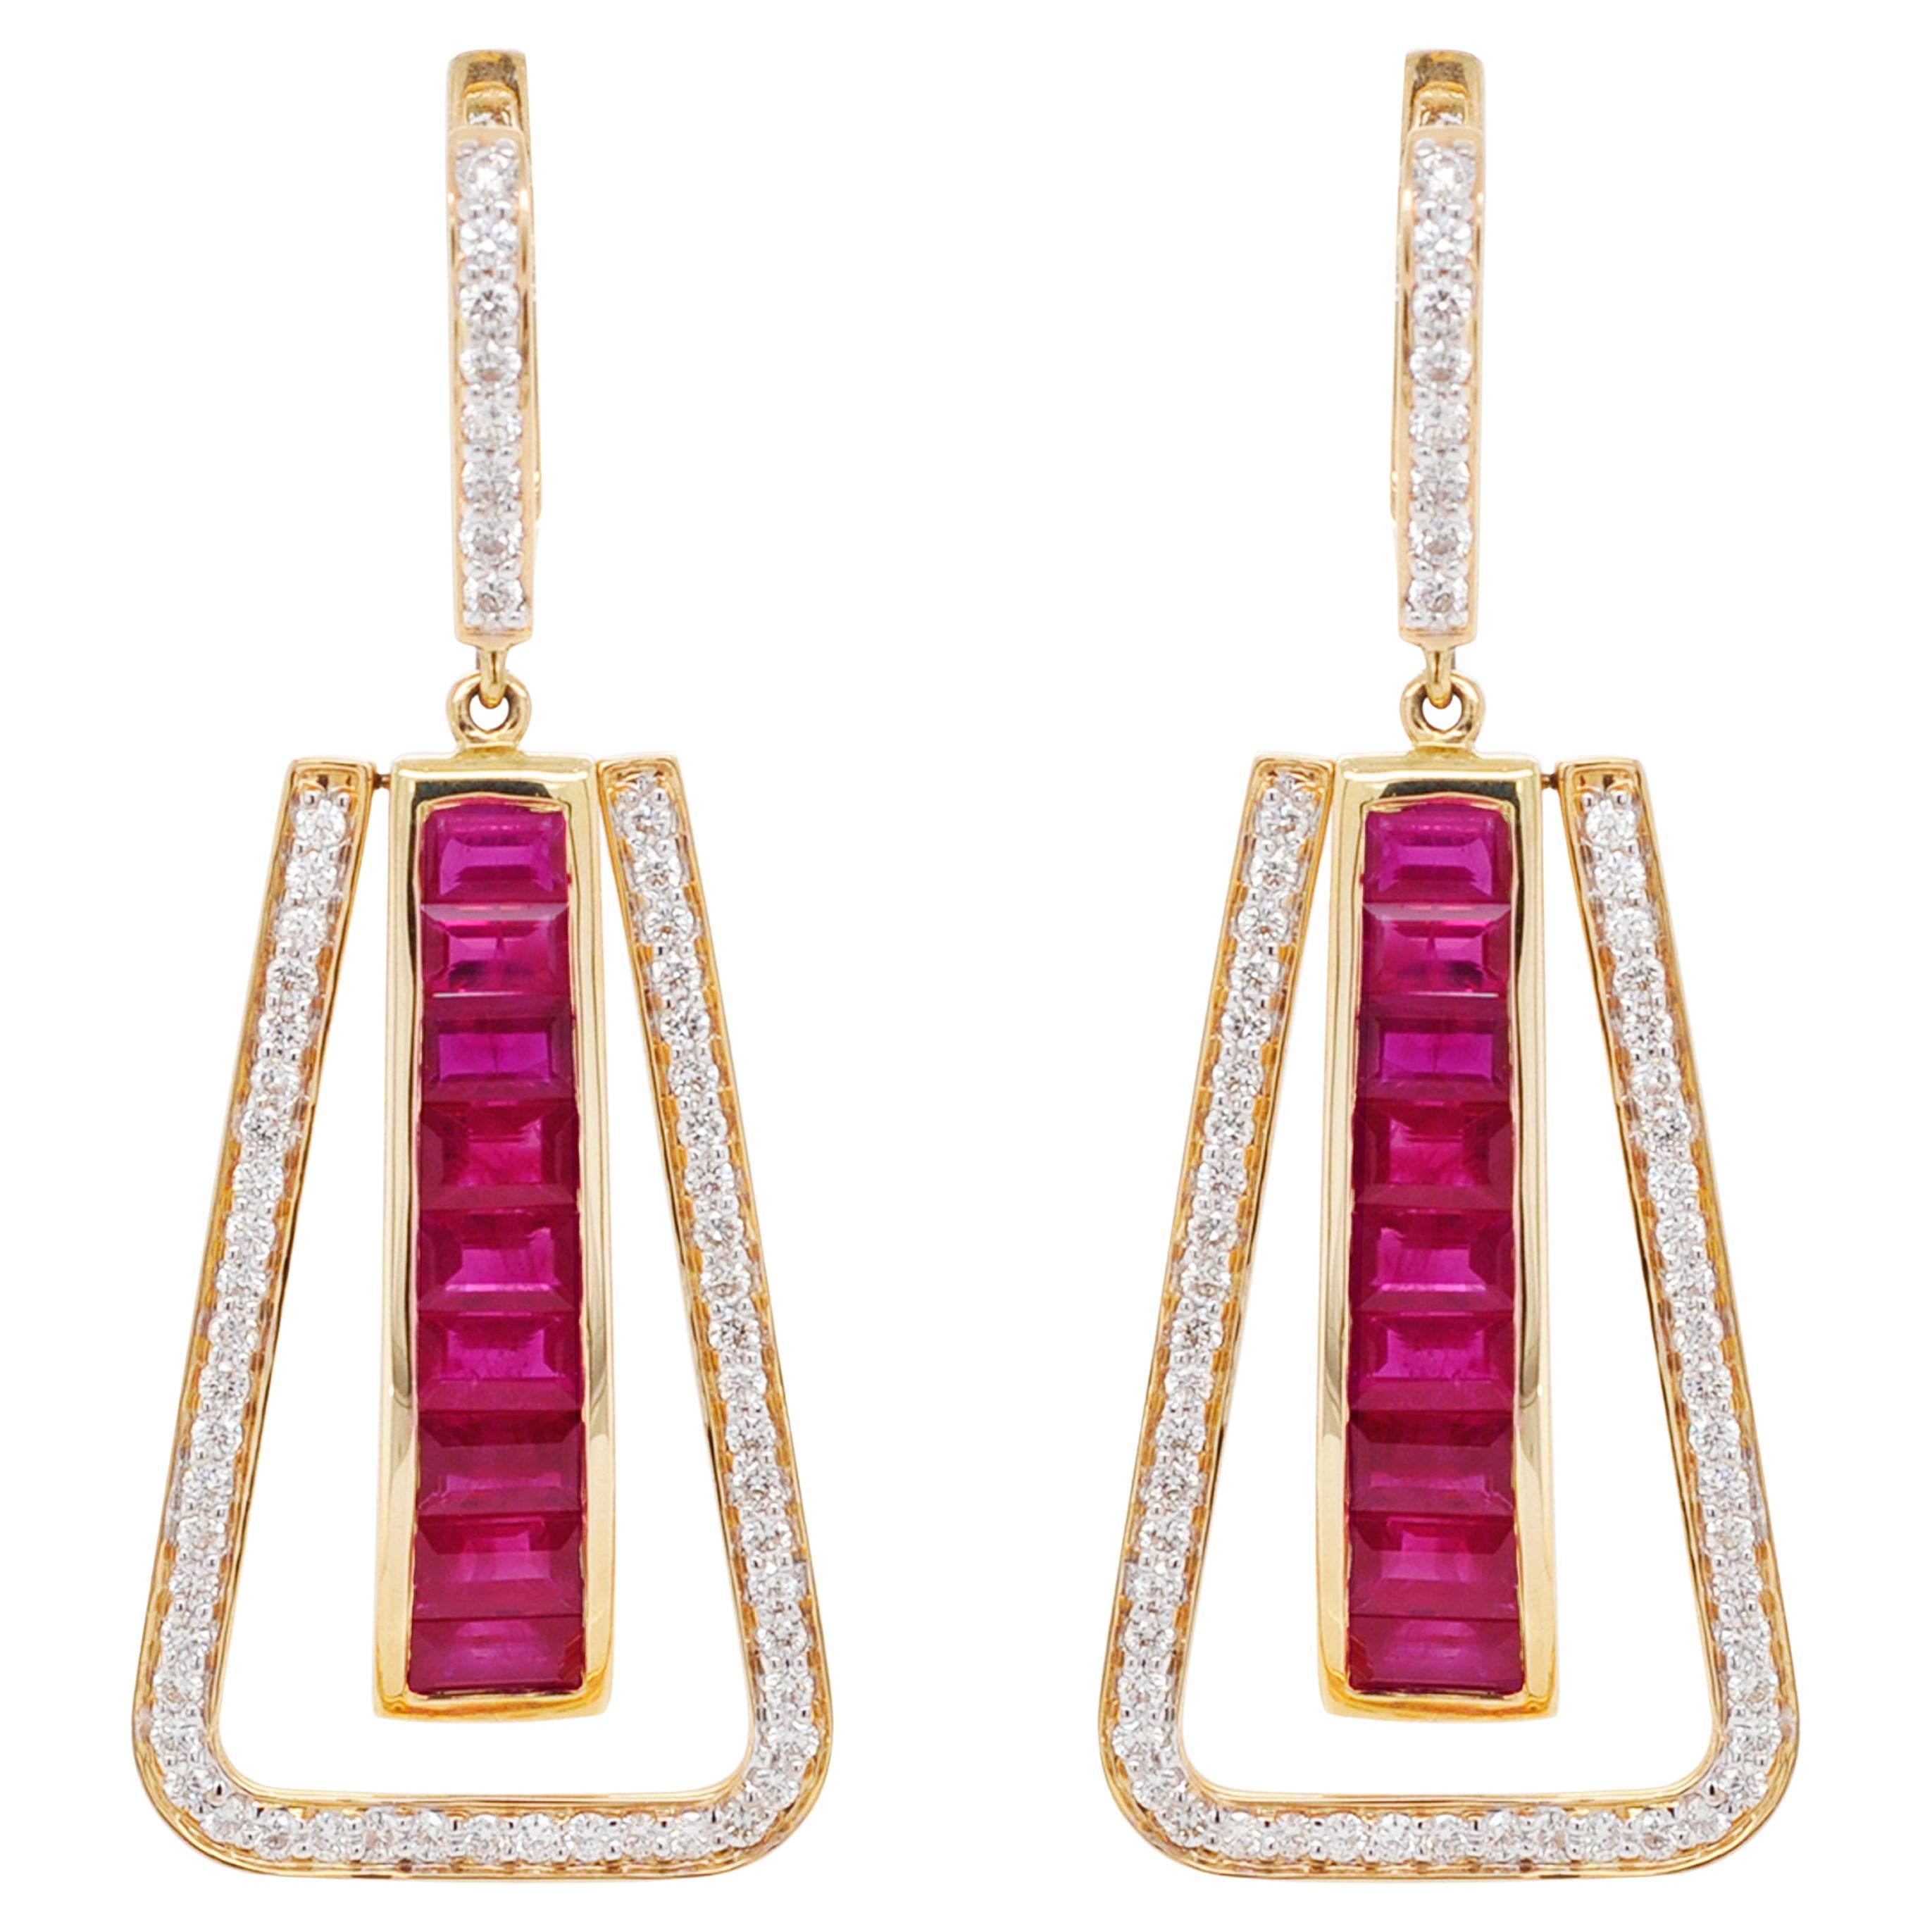 Art Deco Style 18 Karat Gold Channel Set Ruby Baguette Diamond Linear Earrings For Sale